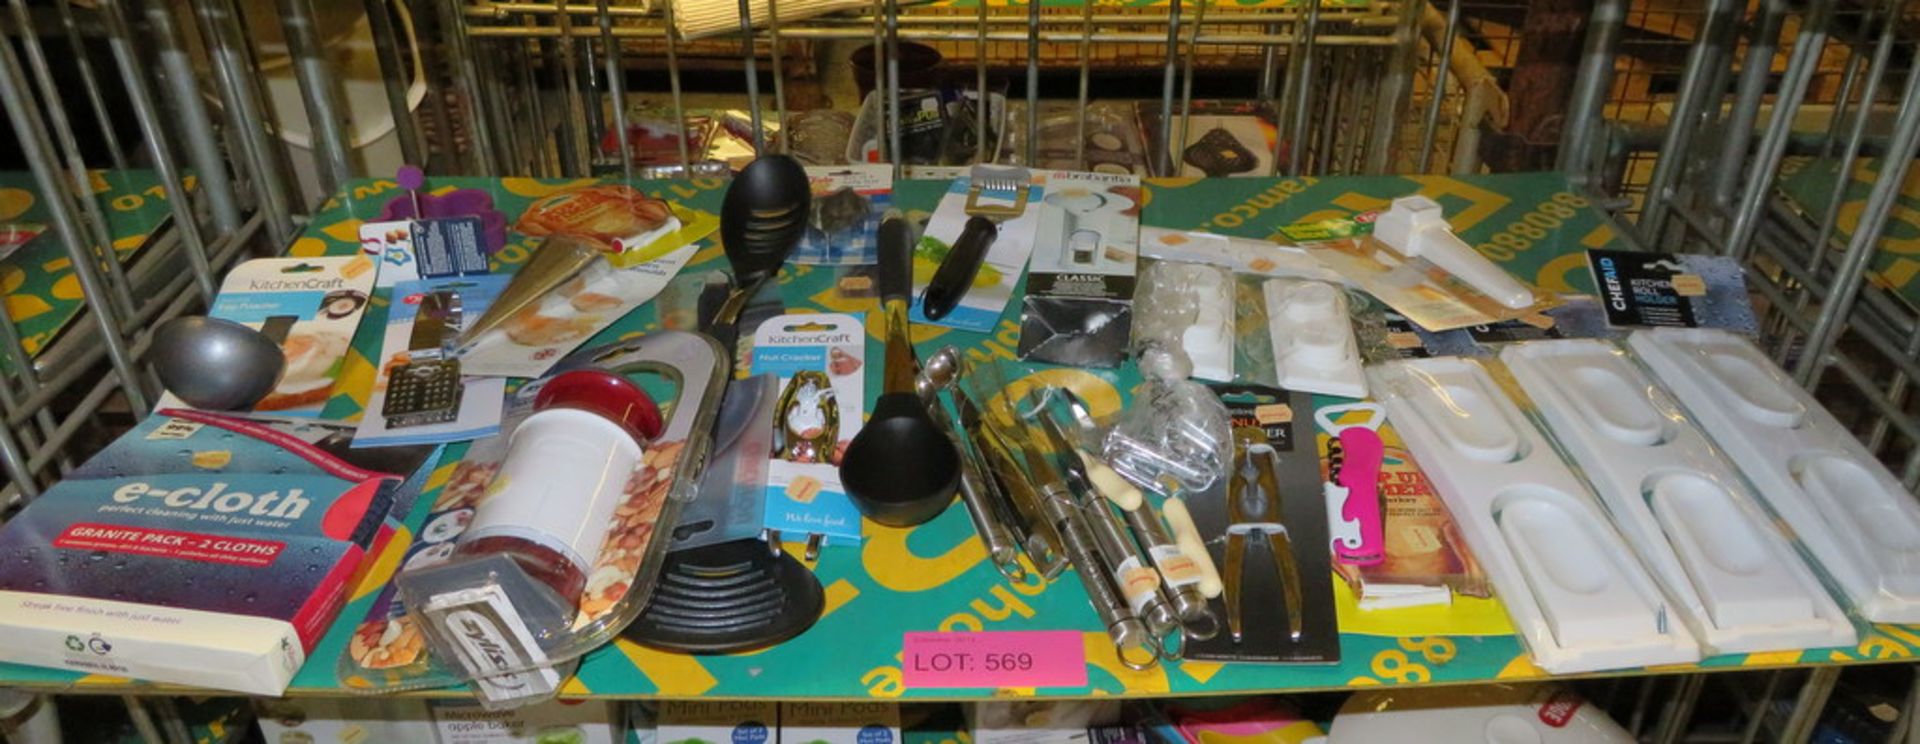 Kitchen utensils - chopper, egg poacher, e-cloths, melon baller